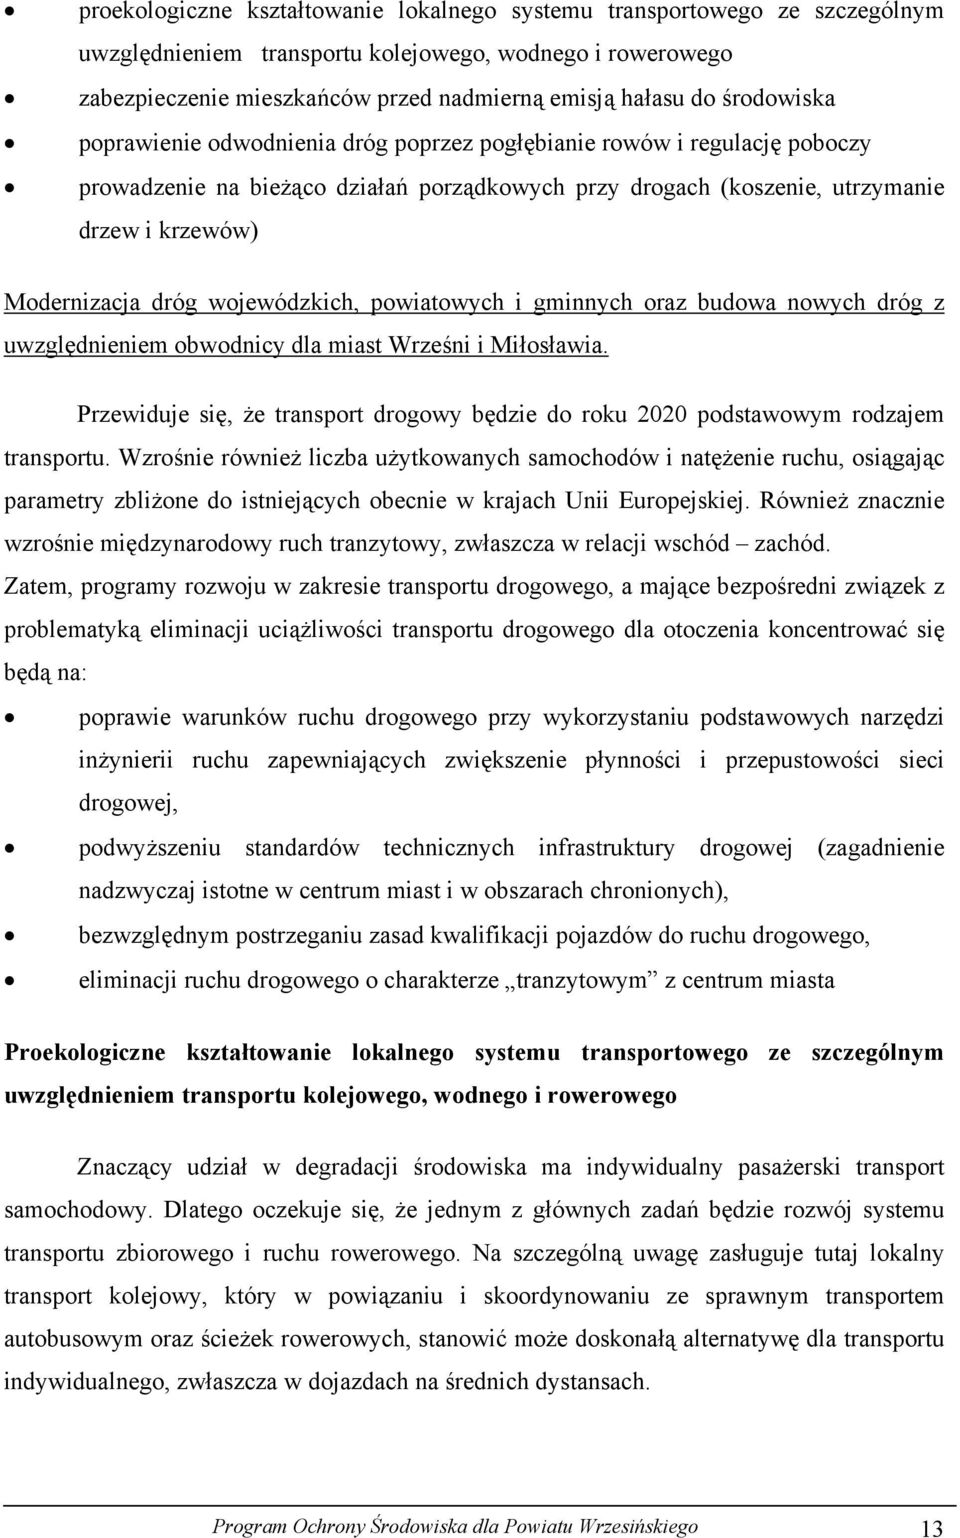 wojewódzkich, powiatowych i gminnych oraz budowa nowych dróg z uwzględnieniem obwodnicy dla miast Wrześni i Miłosławia.